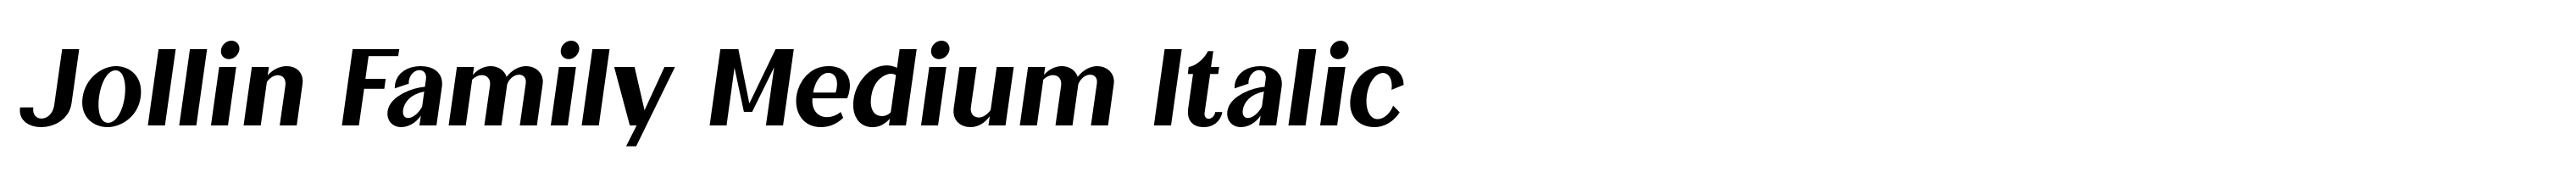 Jollin Family Medium Italic